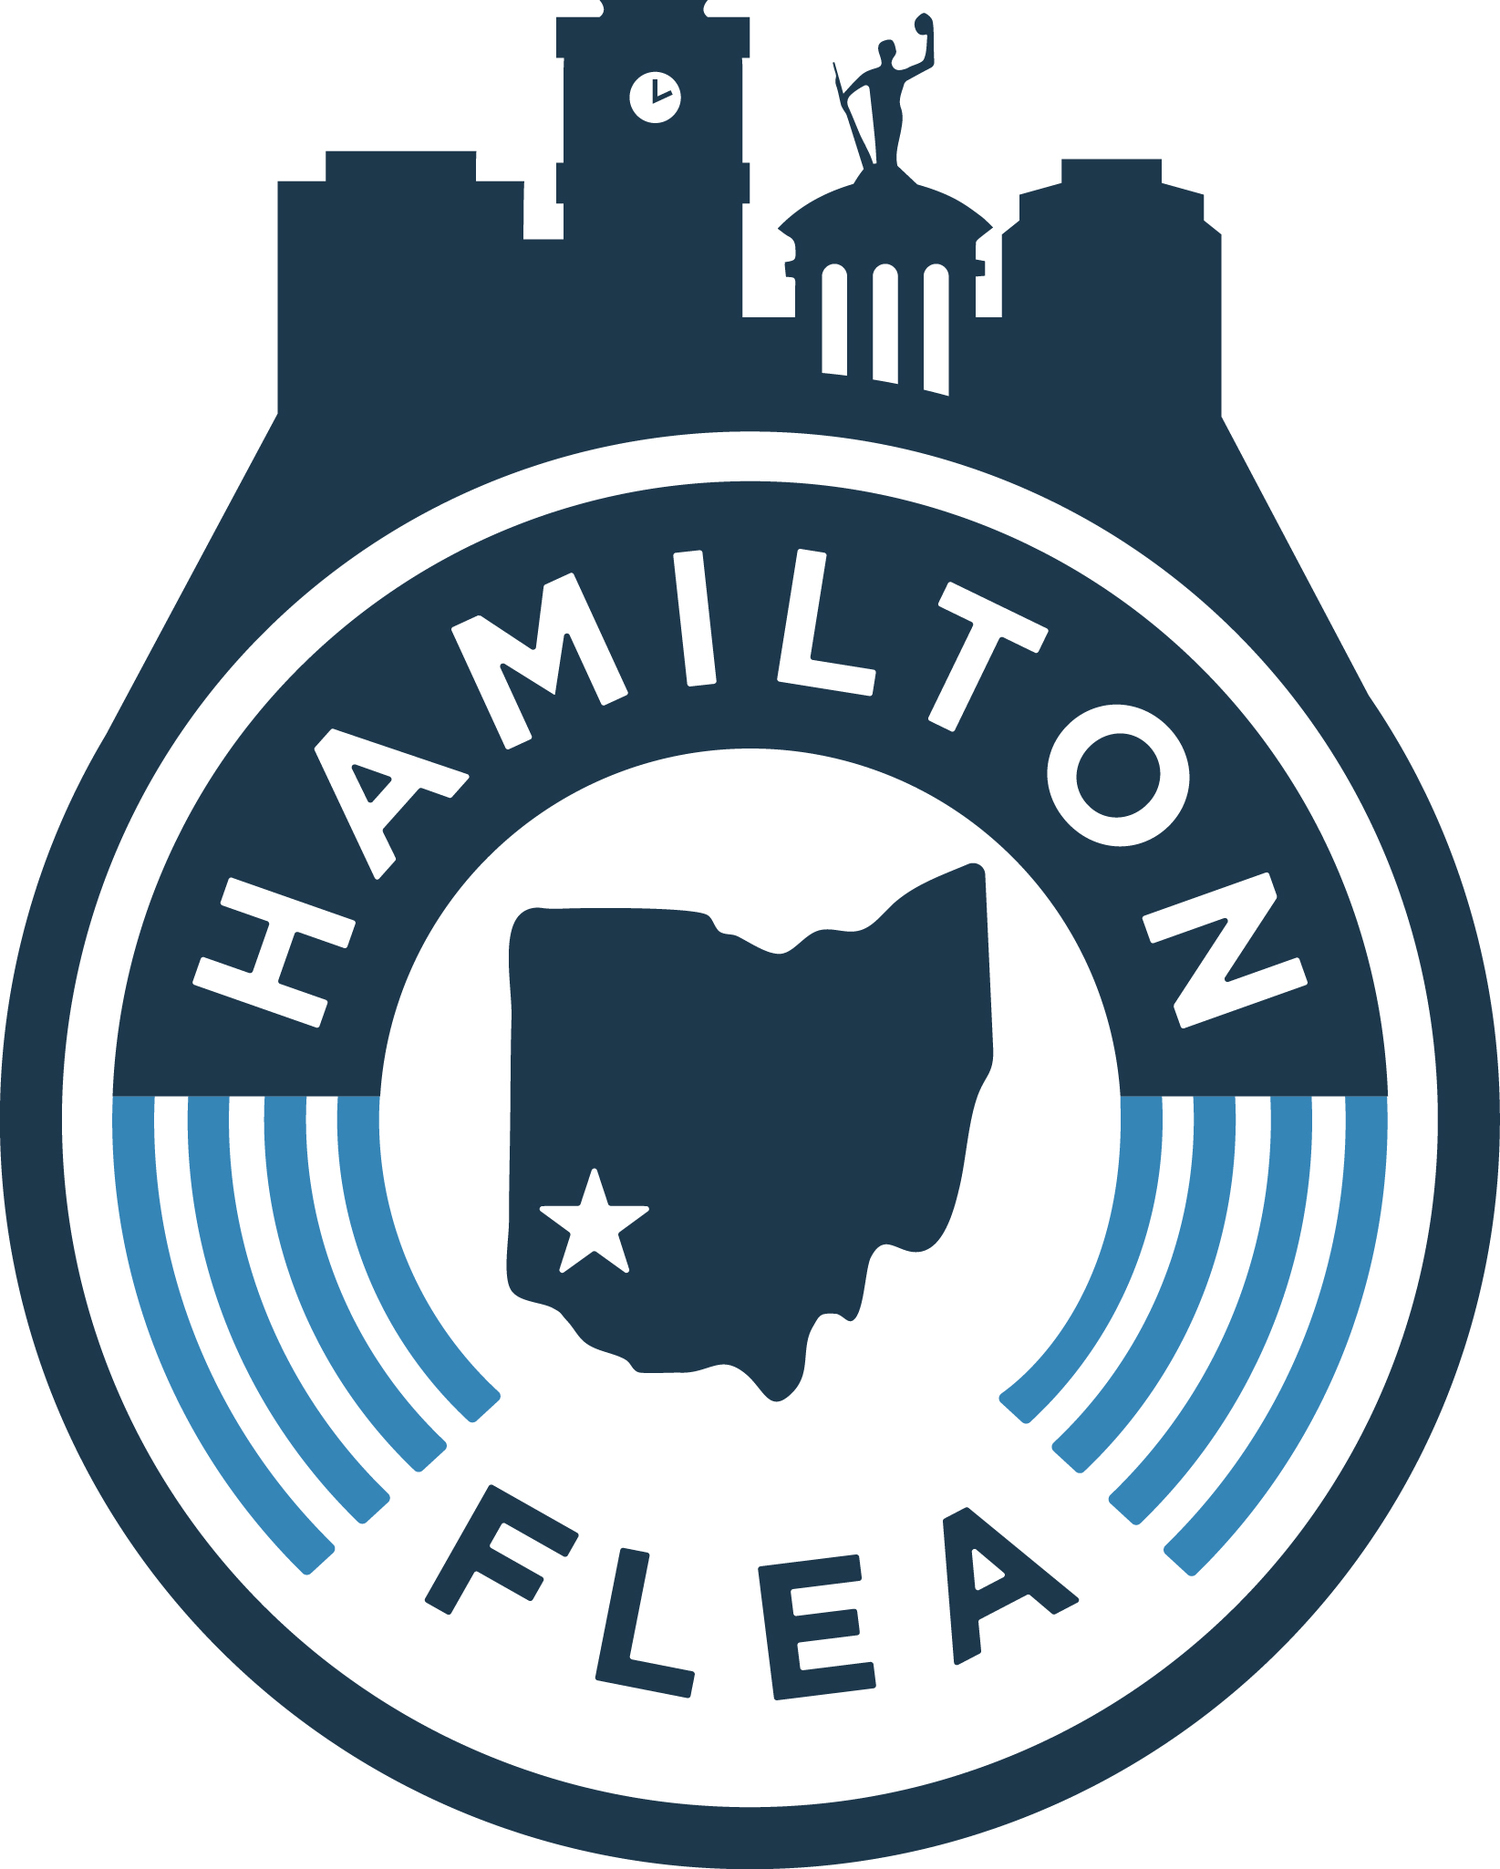 2019 Hamilton Flea Market